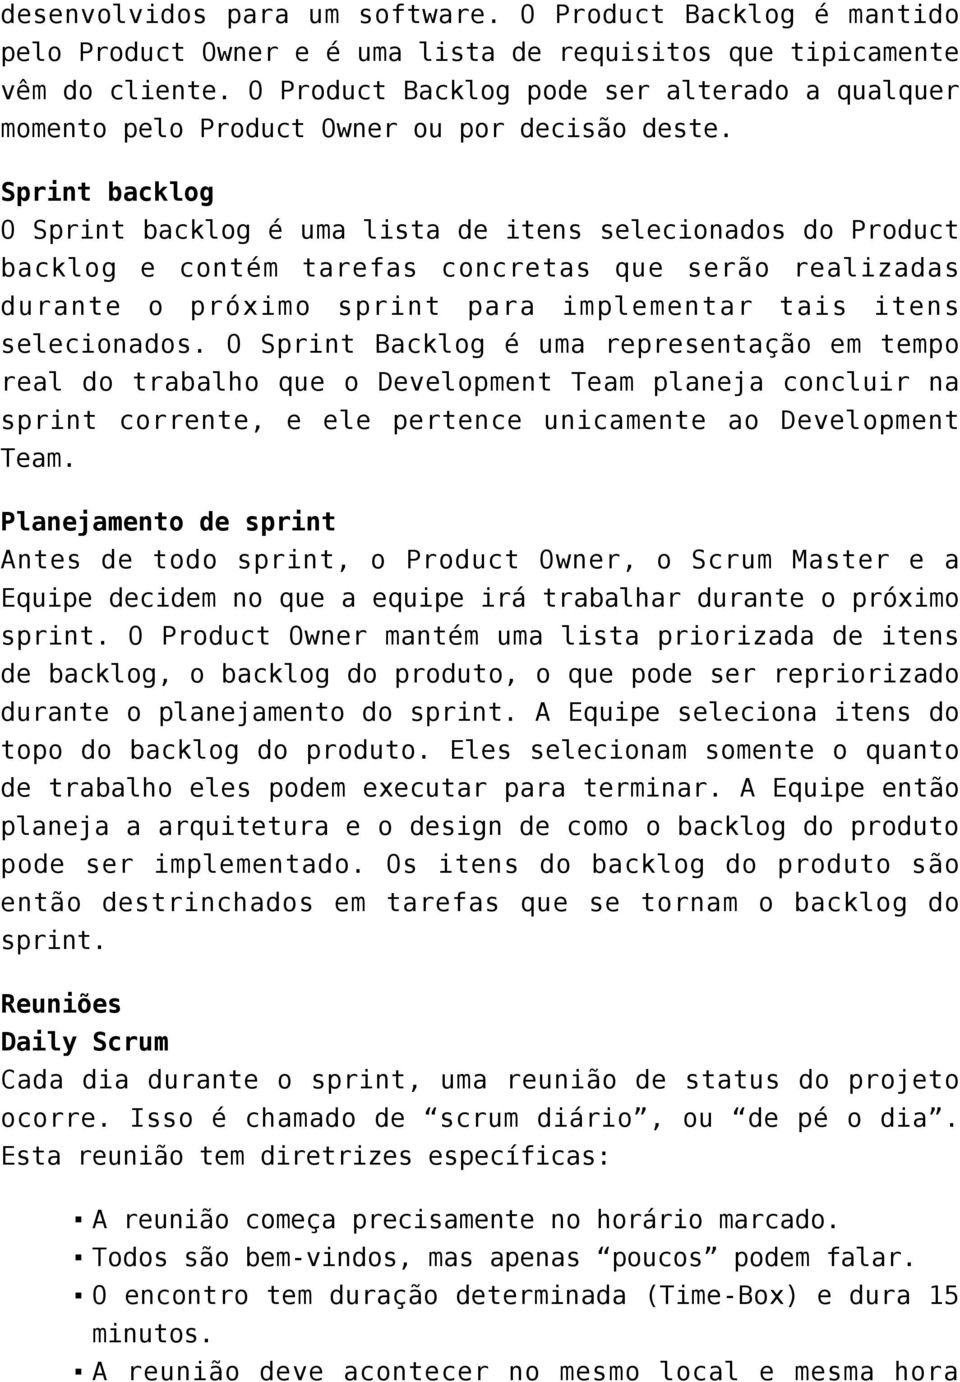 Sprint backlog O Sprint backlog é uma lista de itens selecionados do Product backlog e contém tarefas concretas que serão realizadas durante o próximo sprint para implementar tais itens selecionados.